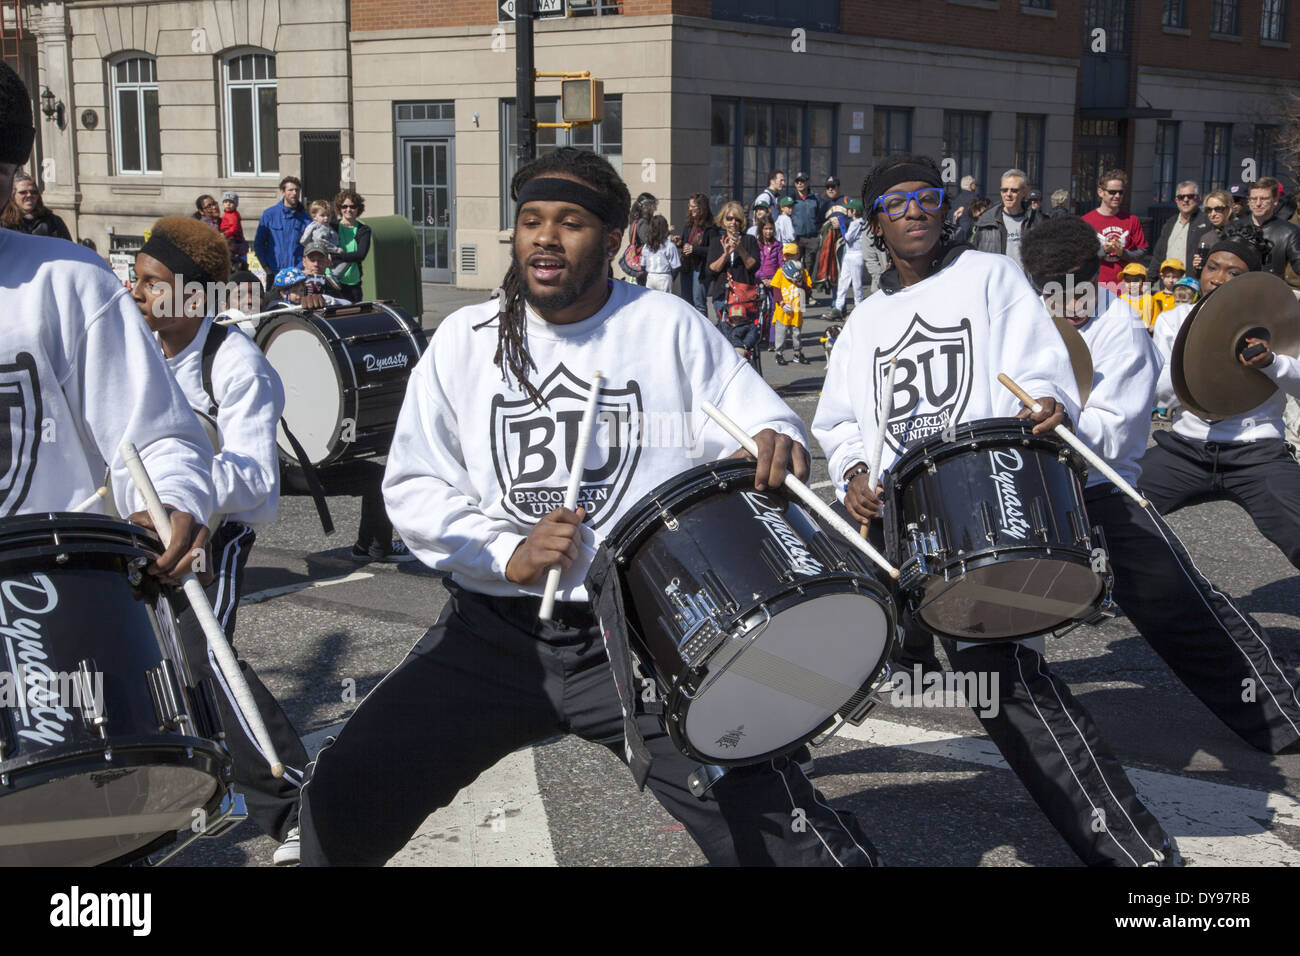 Brooklyn Regno percussion band suona al Little League Parade per iniziare la stagione di baseball a Park Slope, Brooklyn, New York. Foto Stock